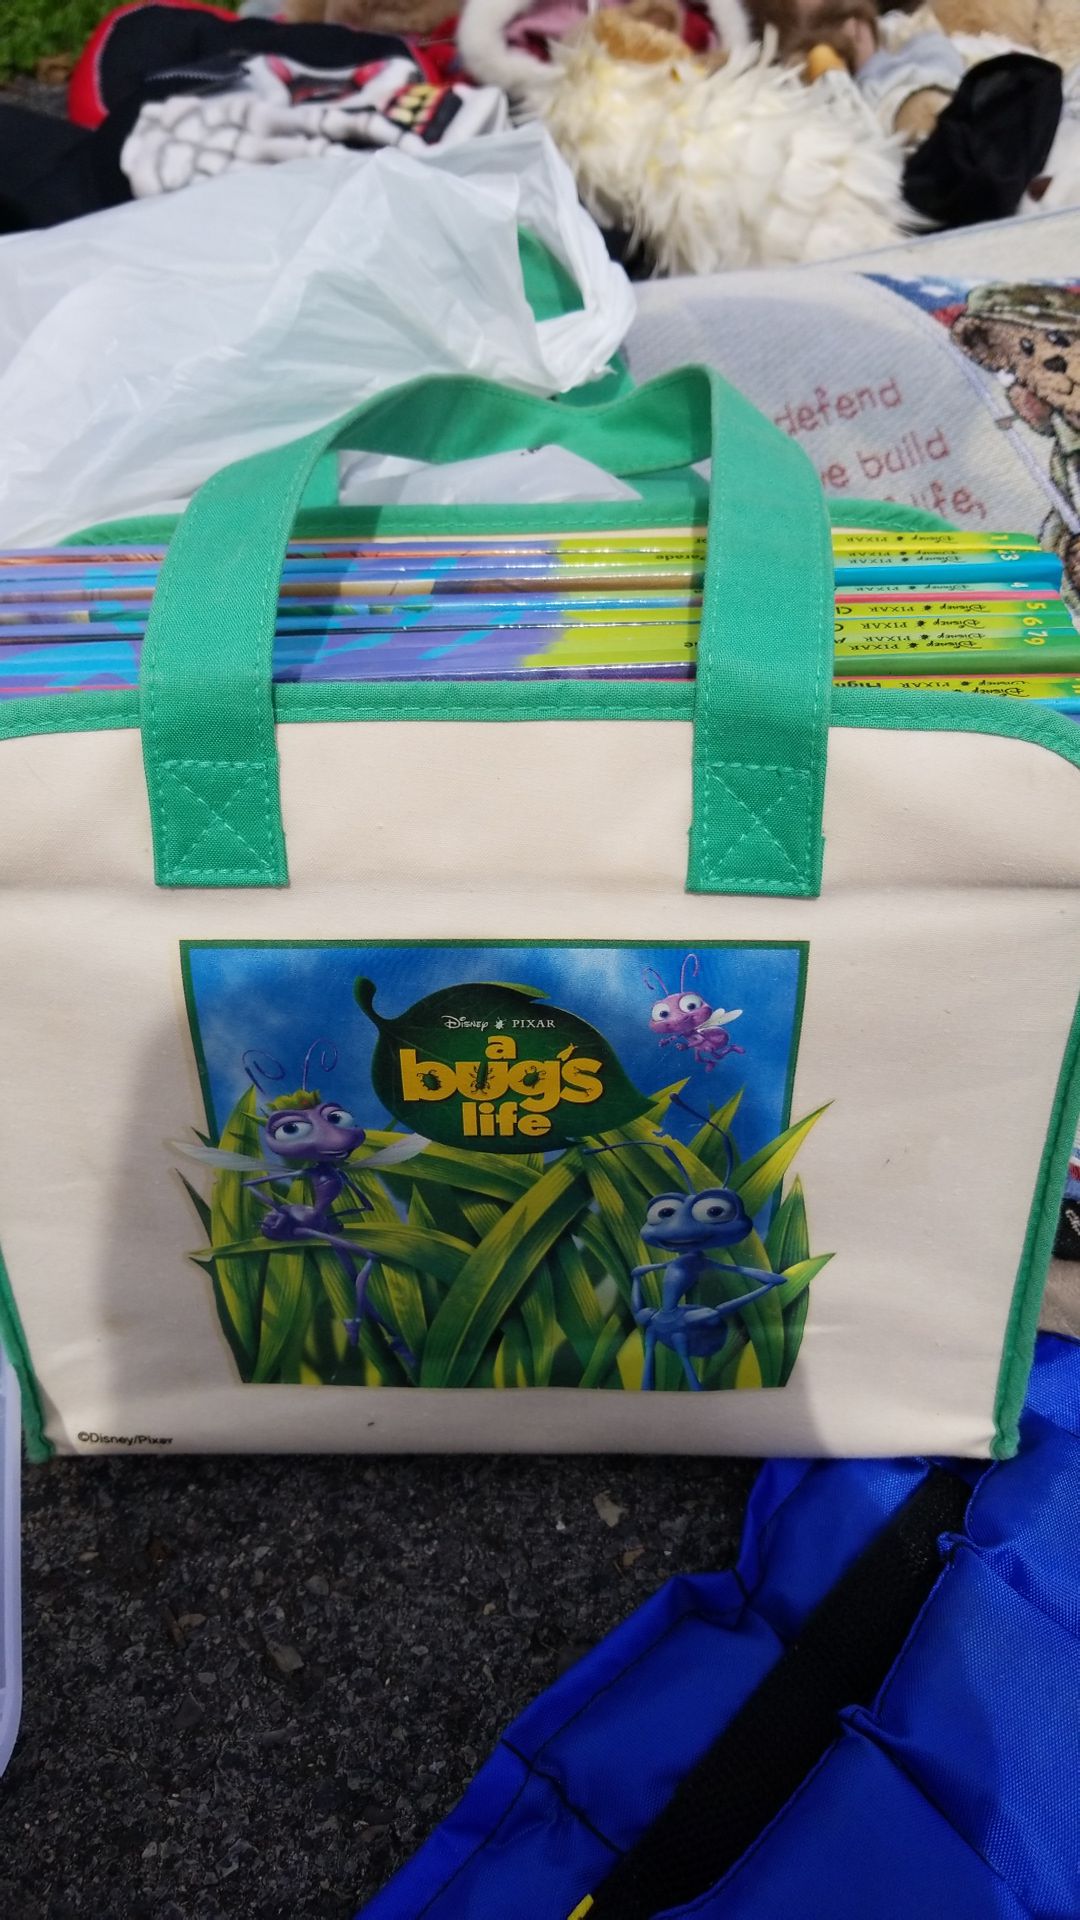 Bugs life book set